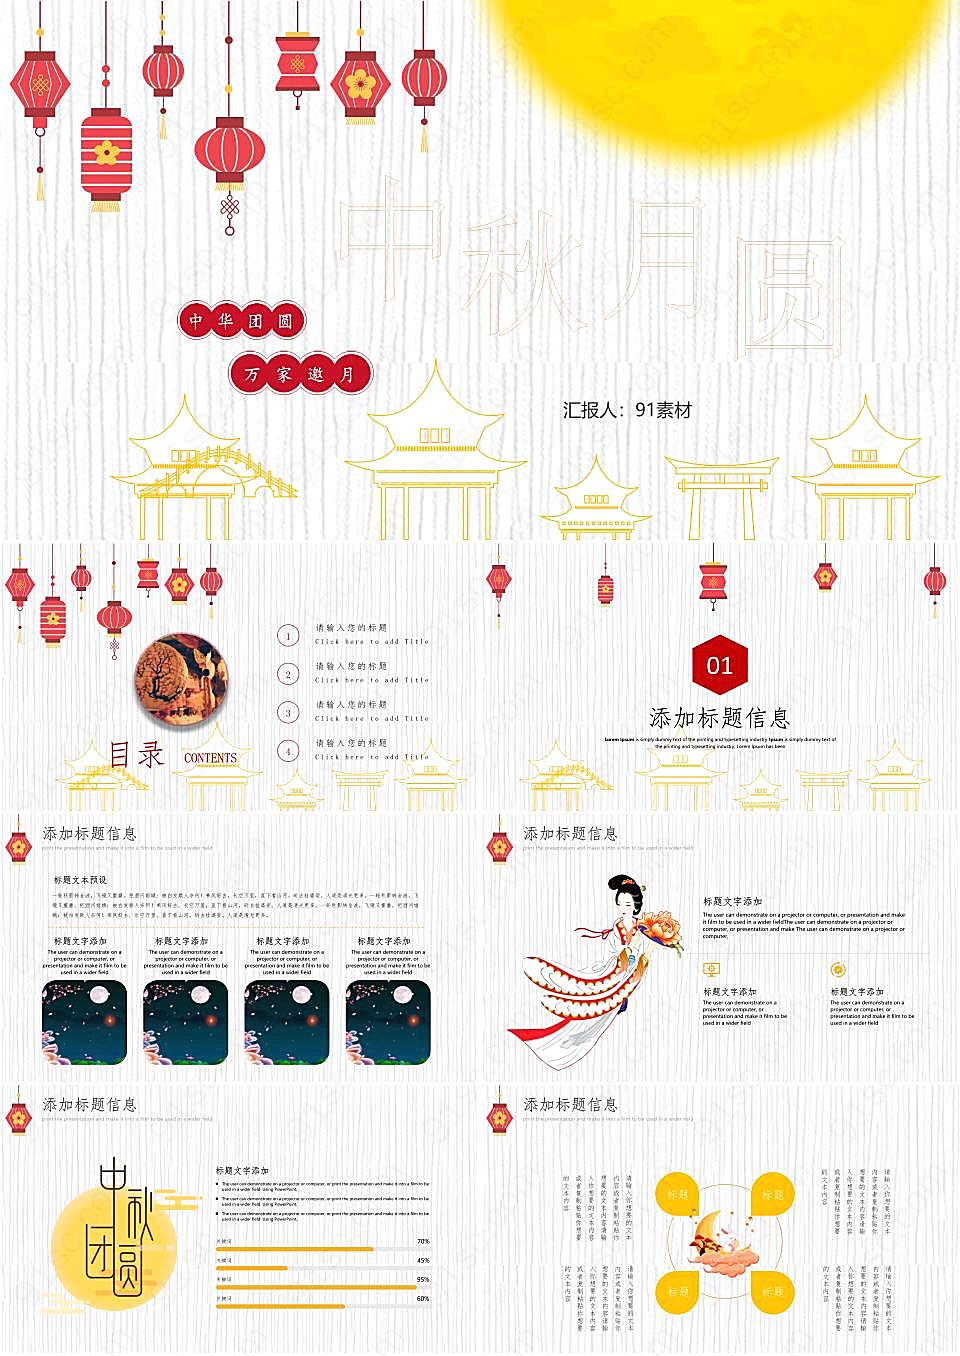 传统灯笼图案背景的节日庆典中秋节